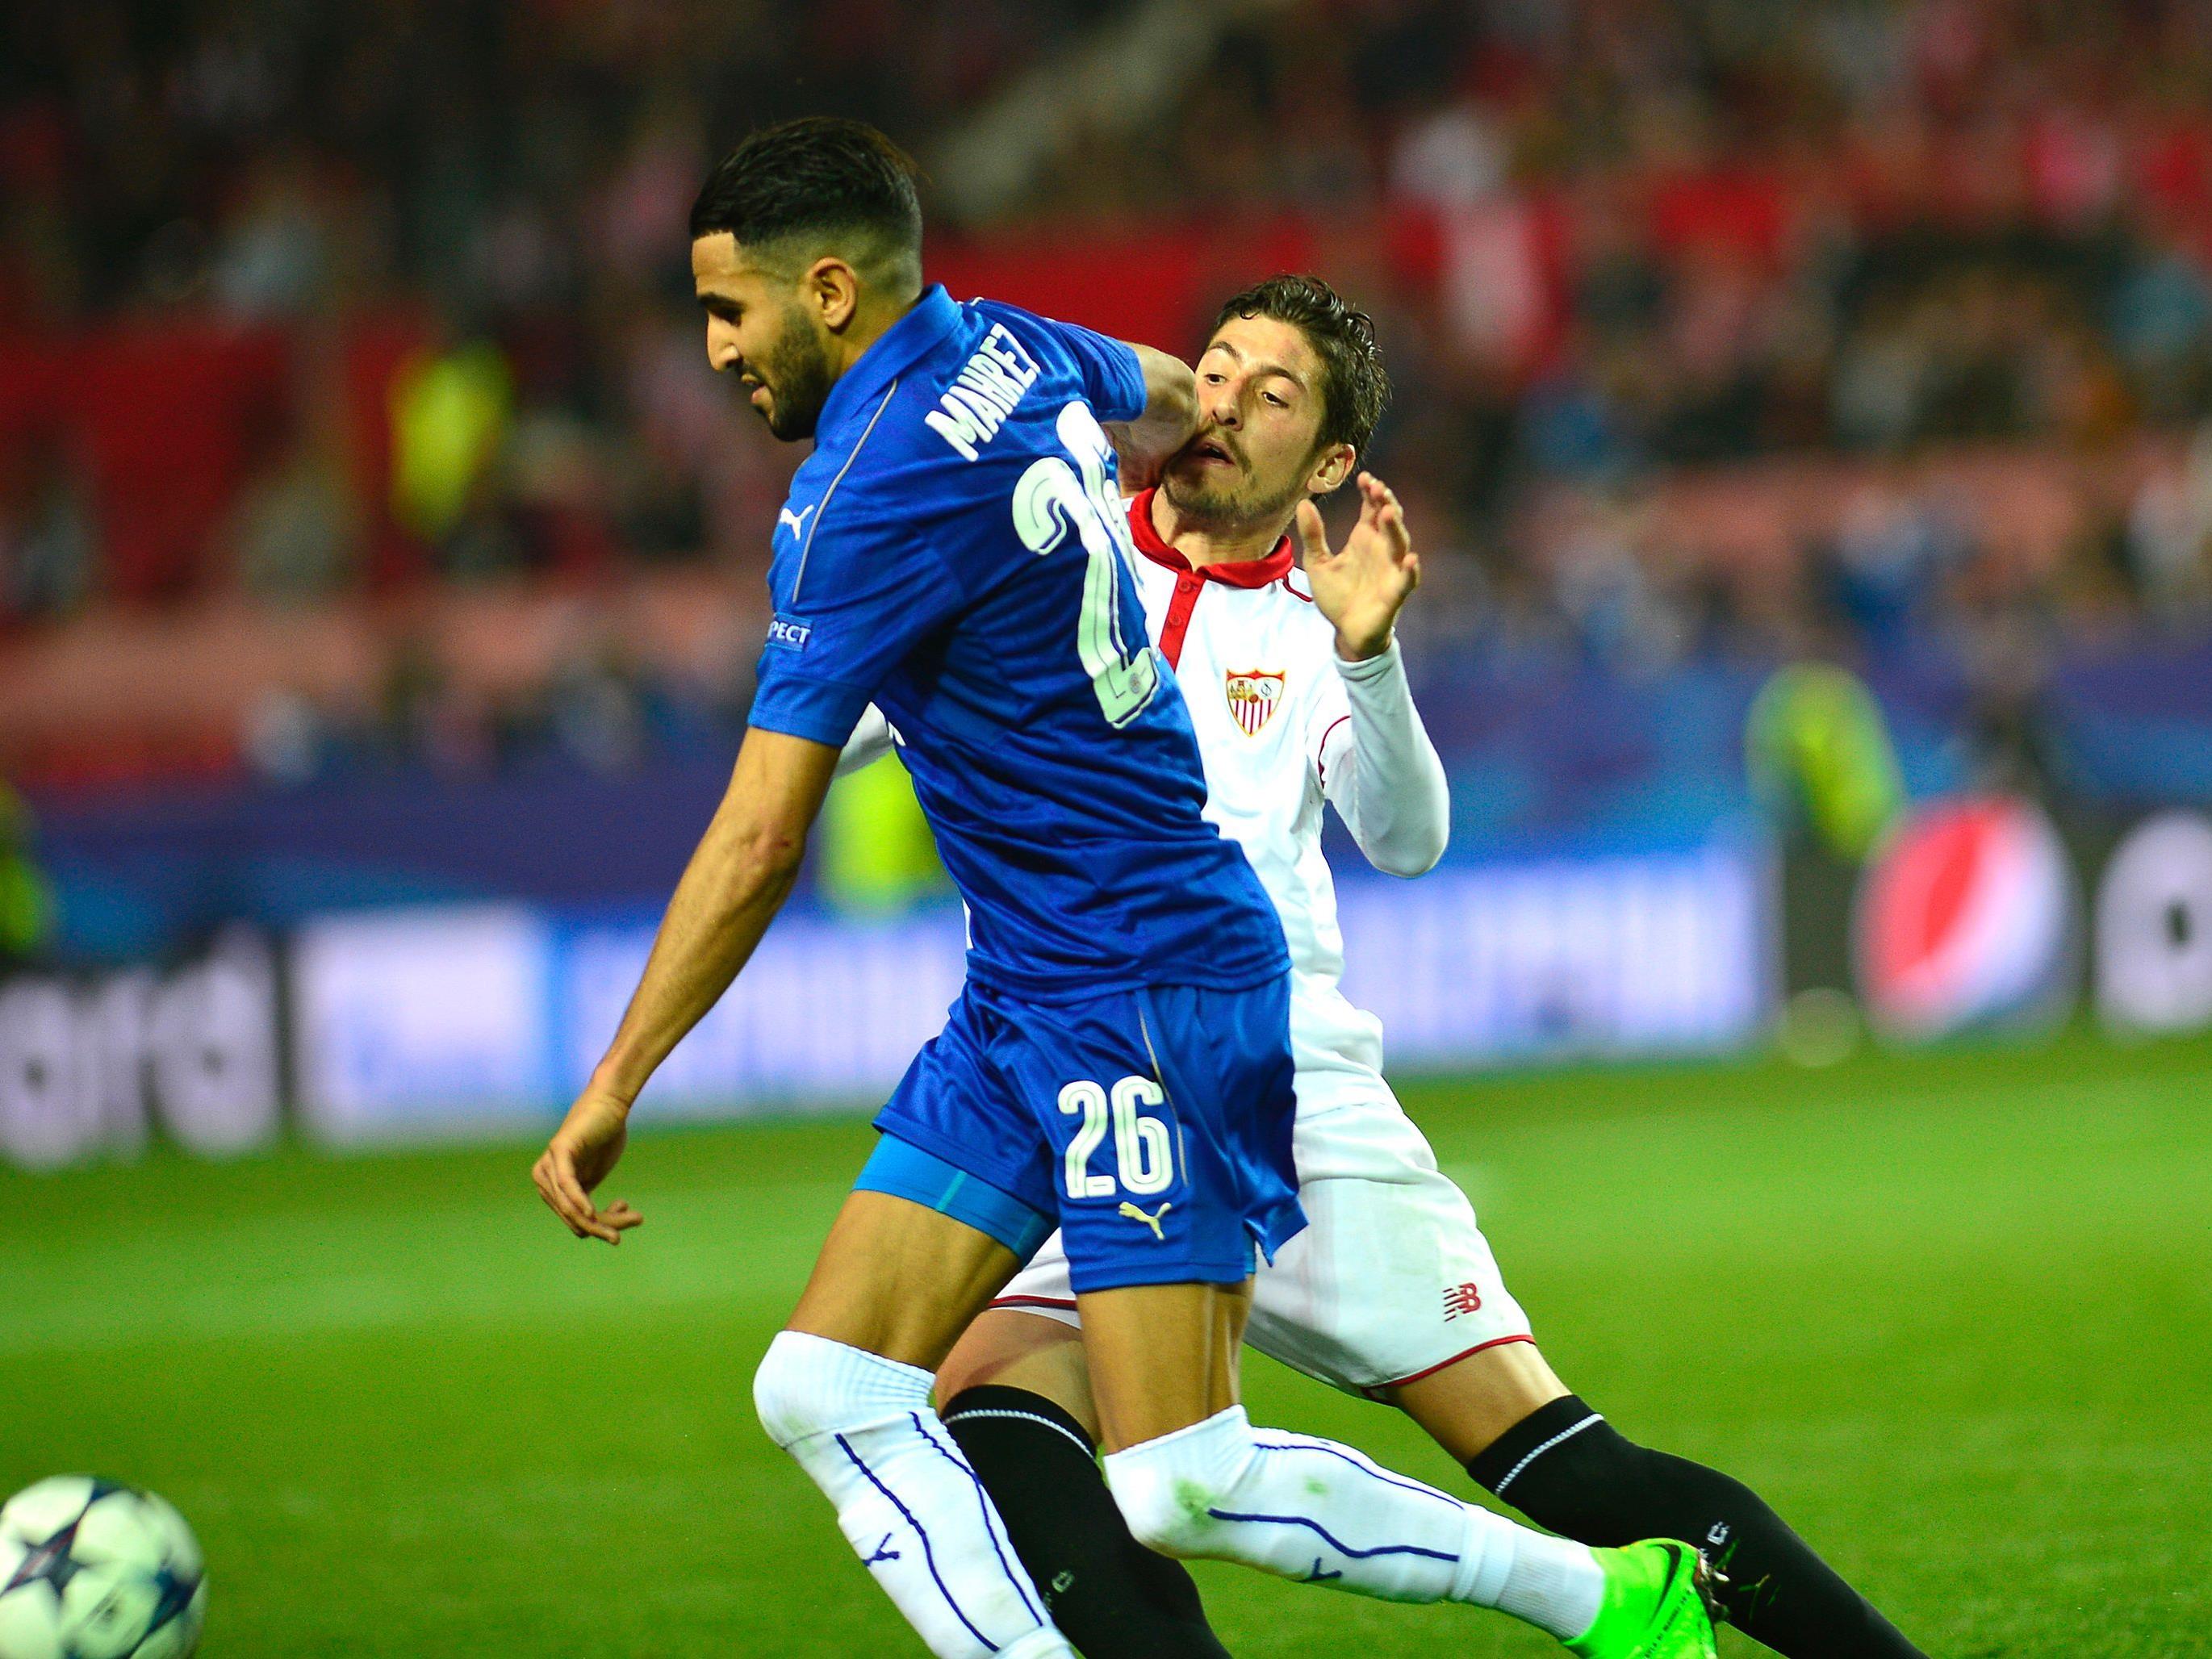 Leicester City empfängt am Dienstagabend den FC Sevilla.